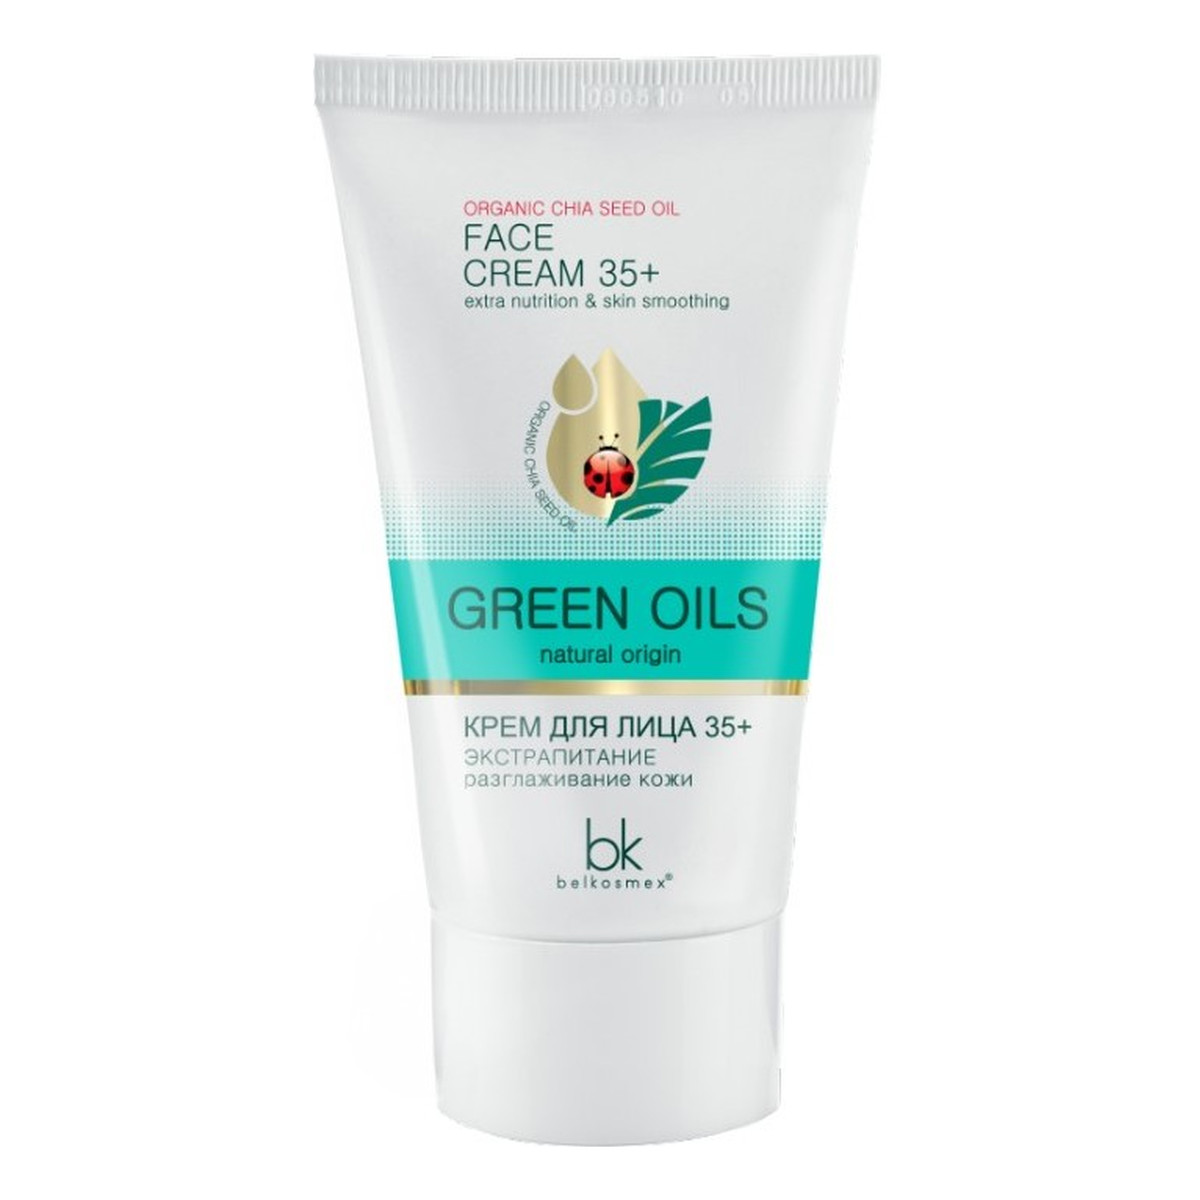 Belkosmex Green Oils krem do twarzy 35+, odżywienie i gładkość 40g